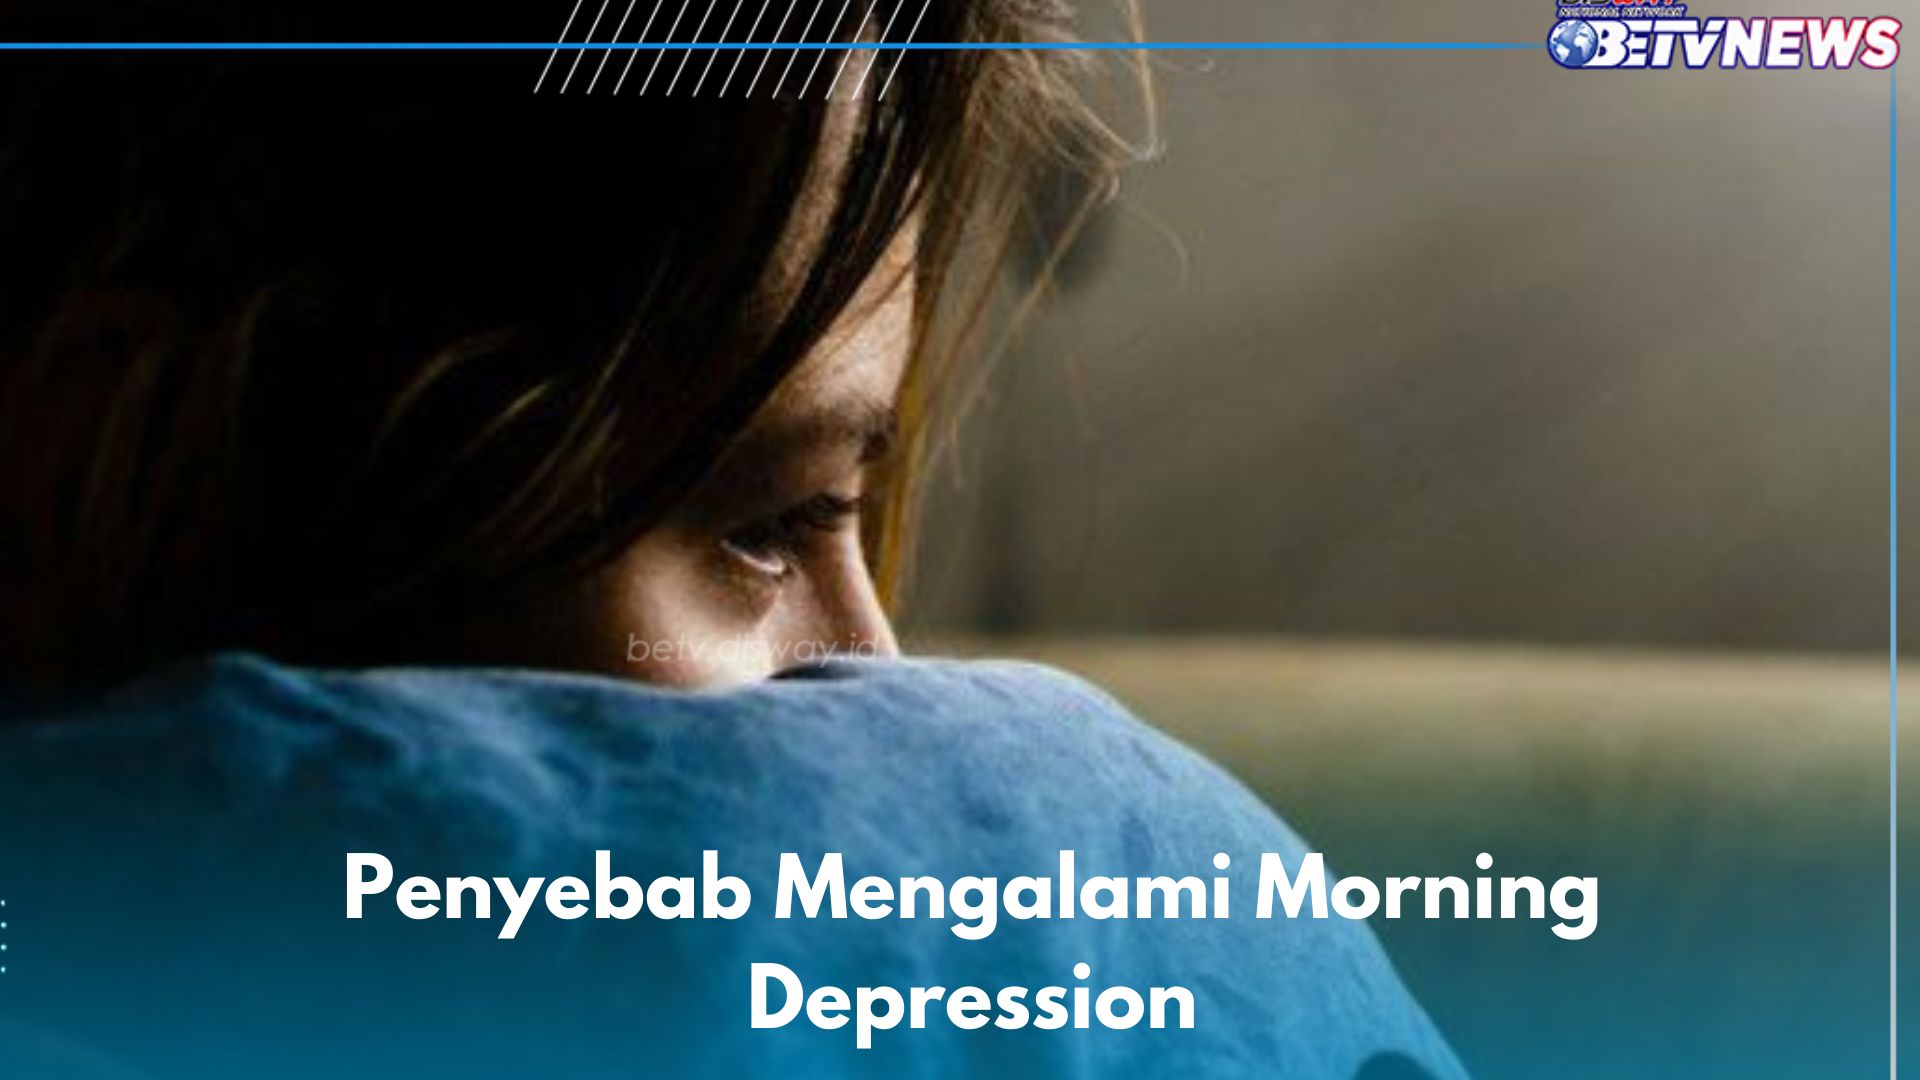 6 Penyebab Morning Depression yang Jarang Diketahui, Salah Satunya Karena Kecemasan